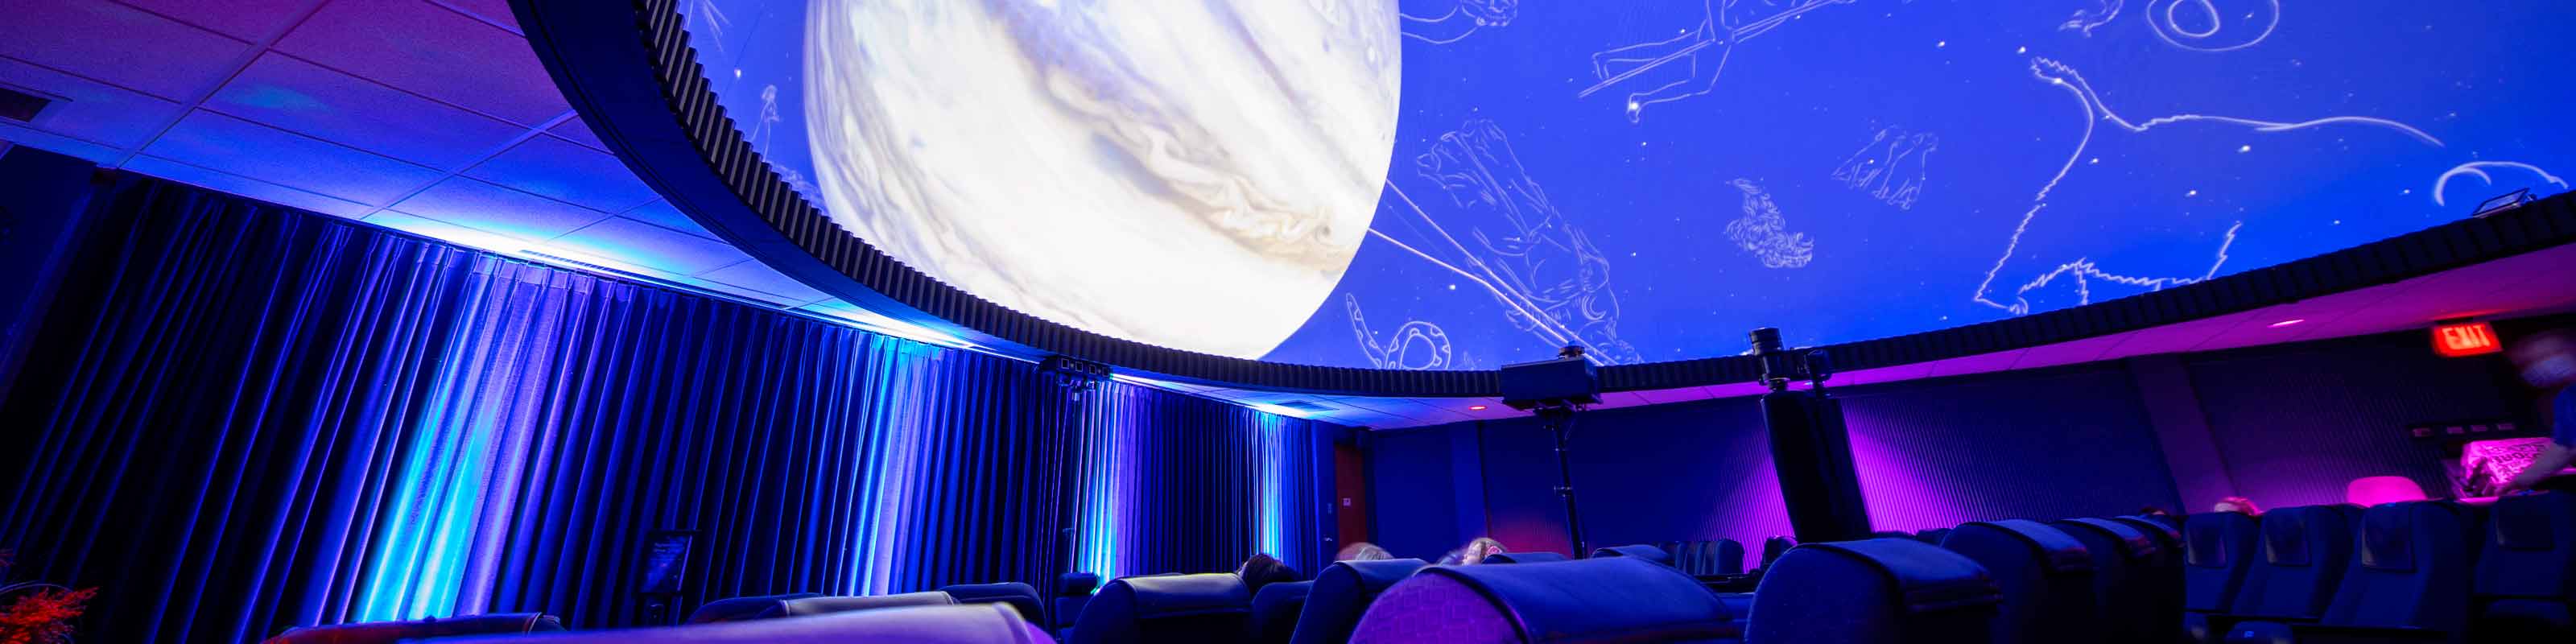 Photo of the planetarium